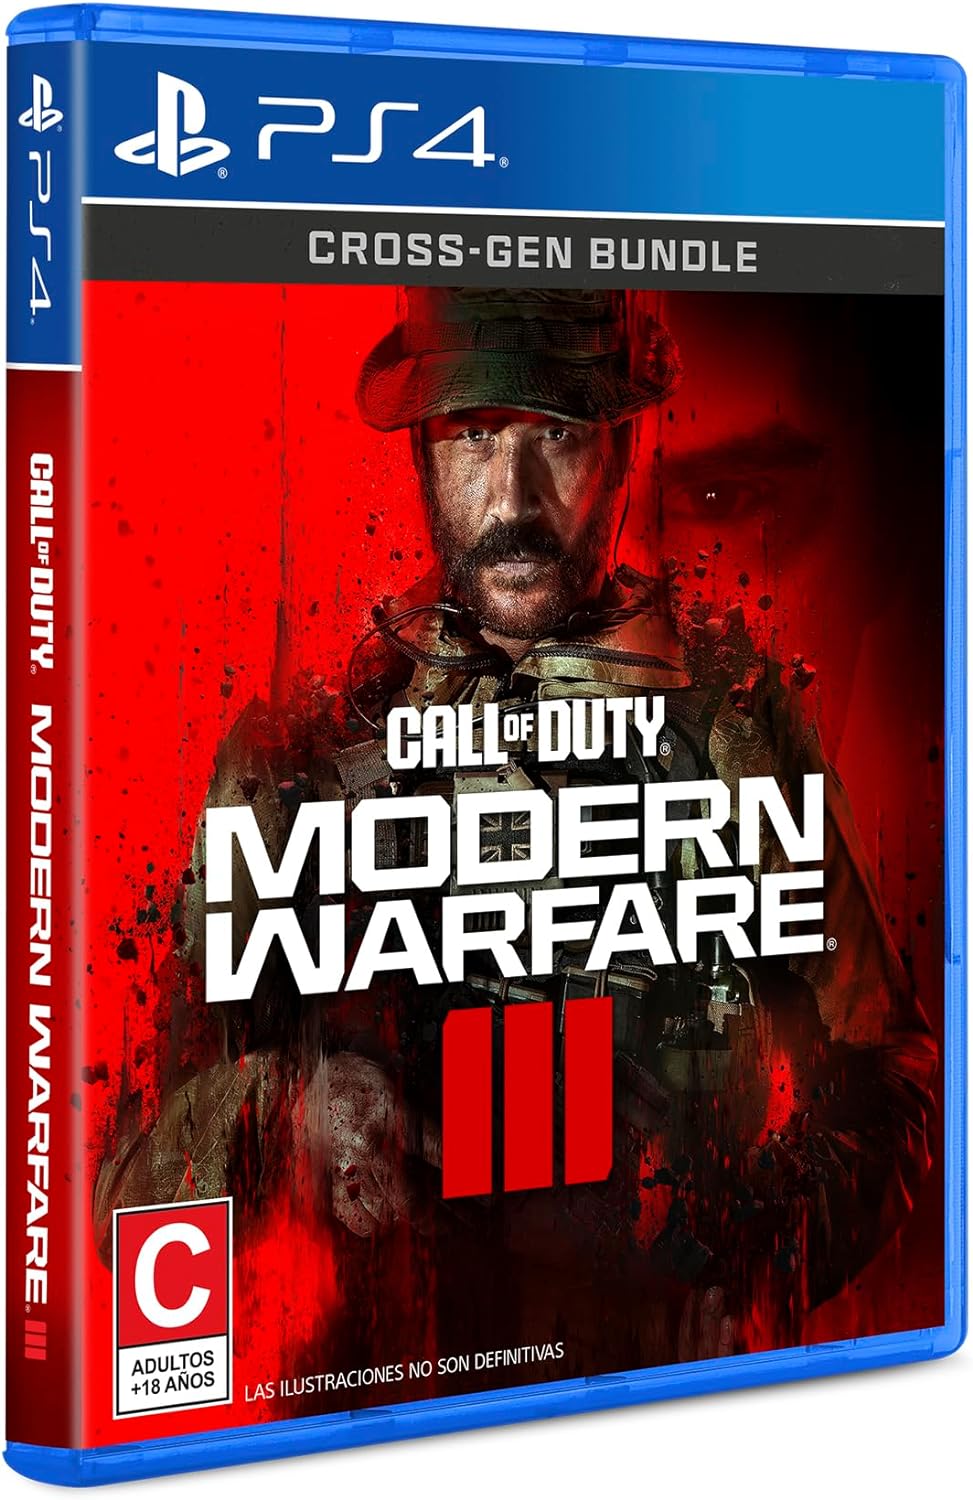 Call of Duty Modern Warfare III (PlayStation 4)